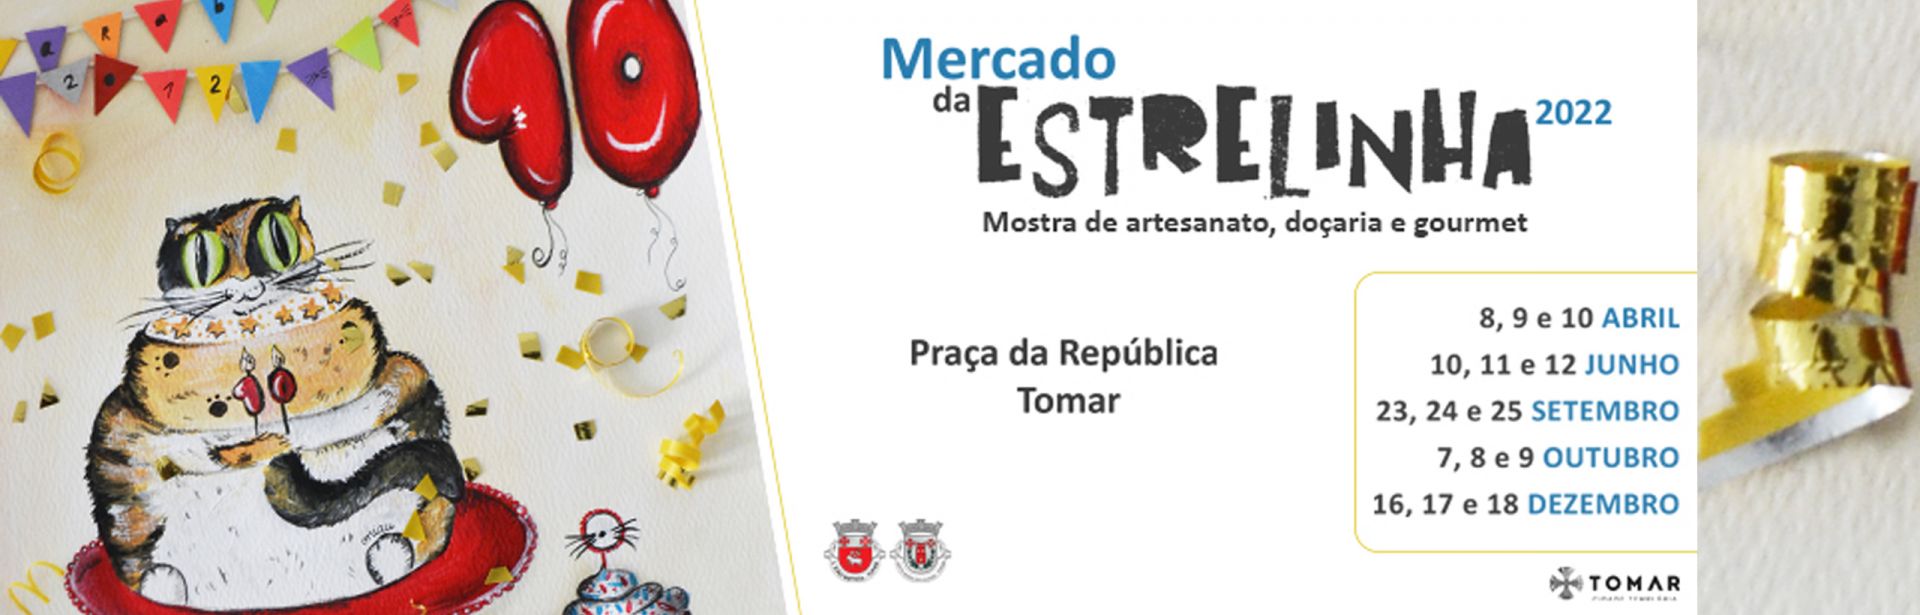 Mercado da Estrelinha, mostra de artesanato, doçaria e gourmet 2022